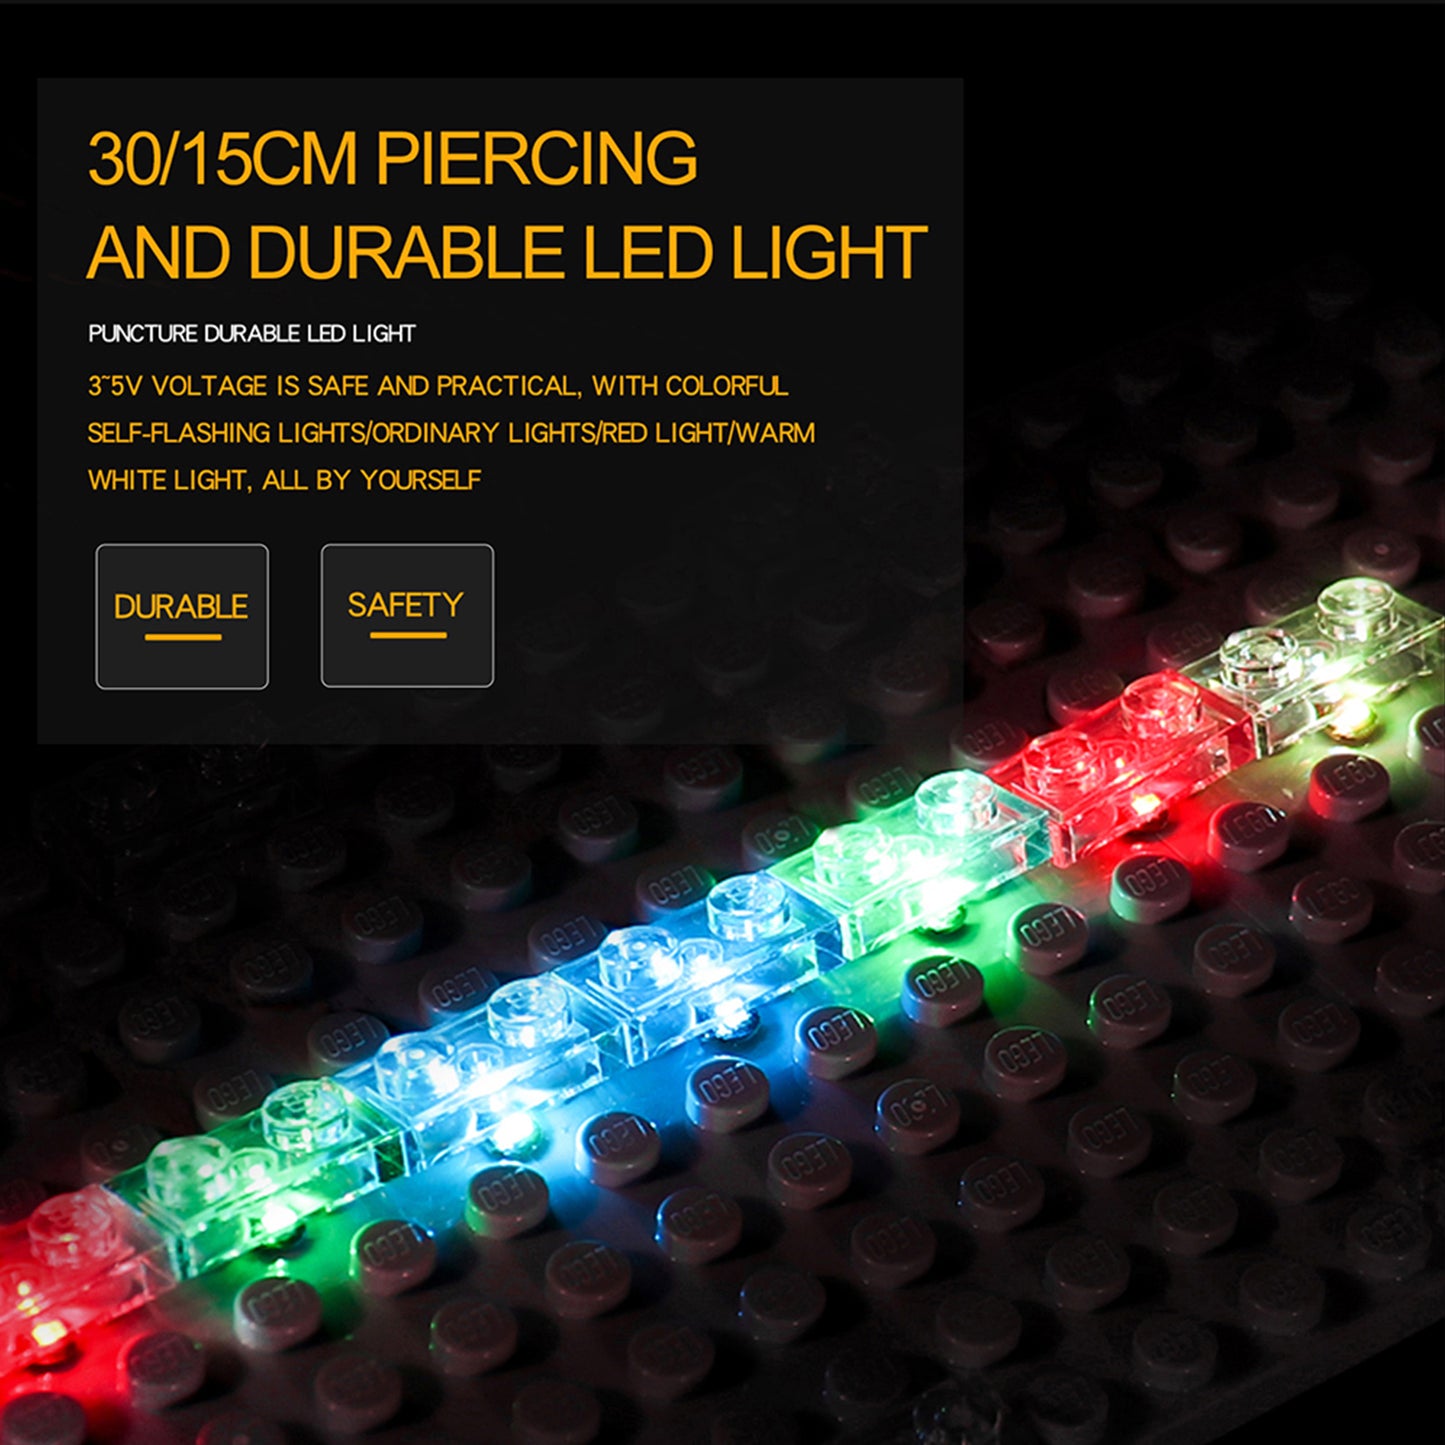 Light kit for Lego Technic 10290 Pickup Truck 